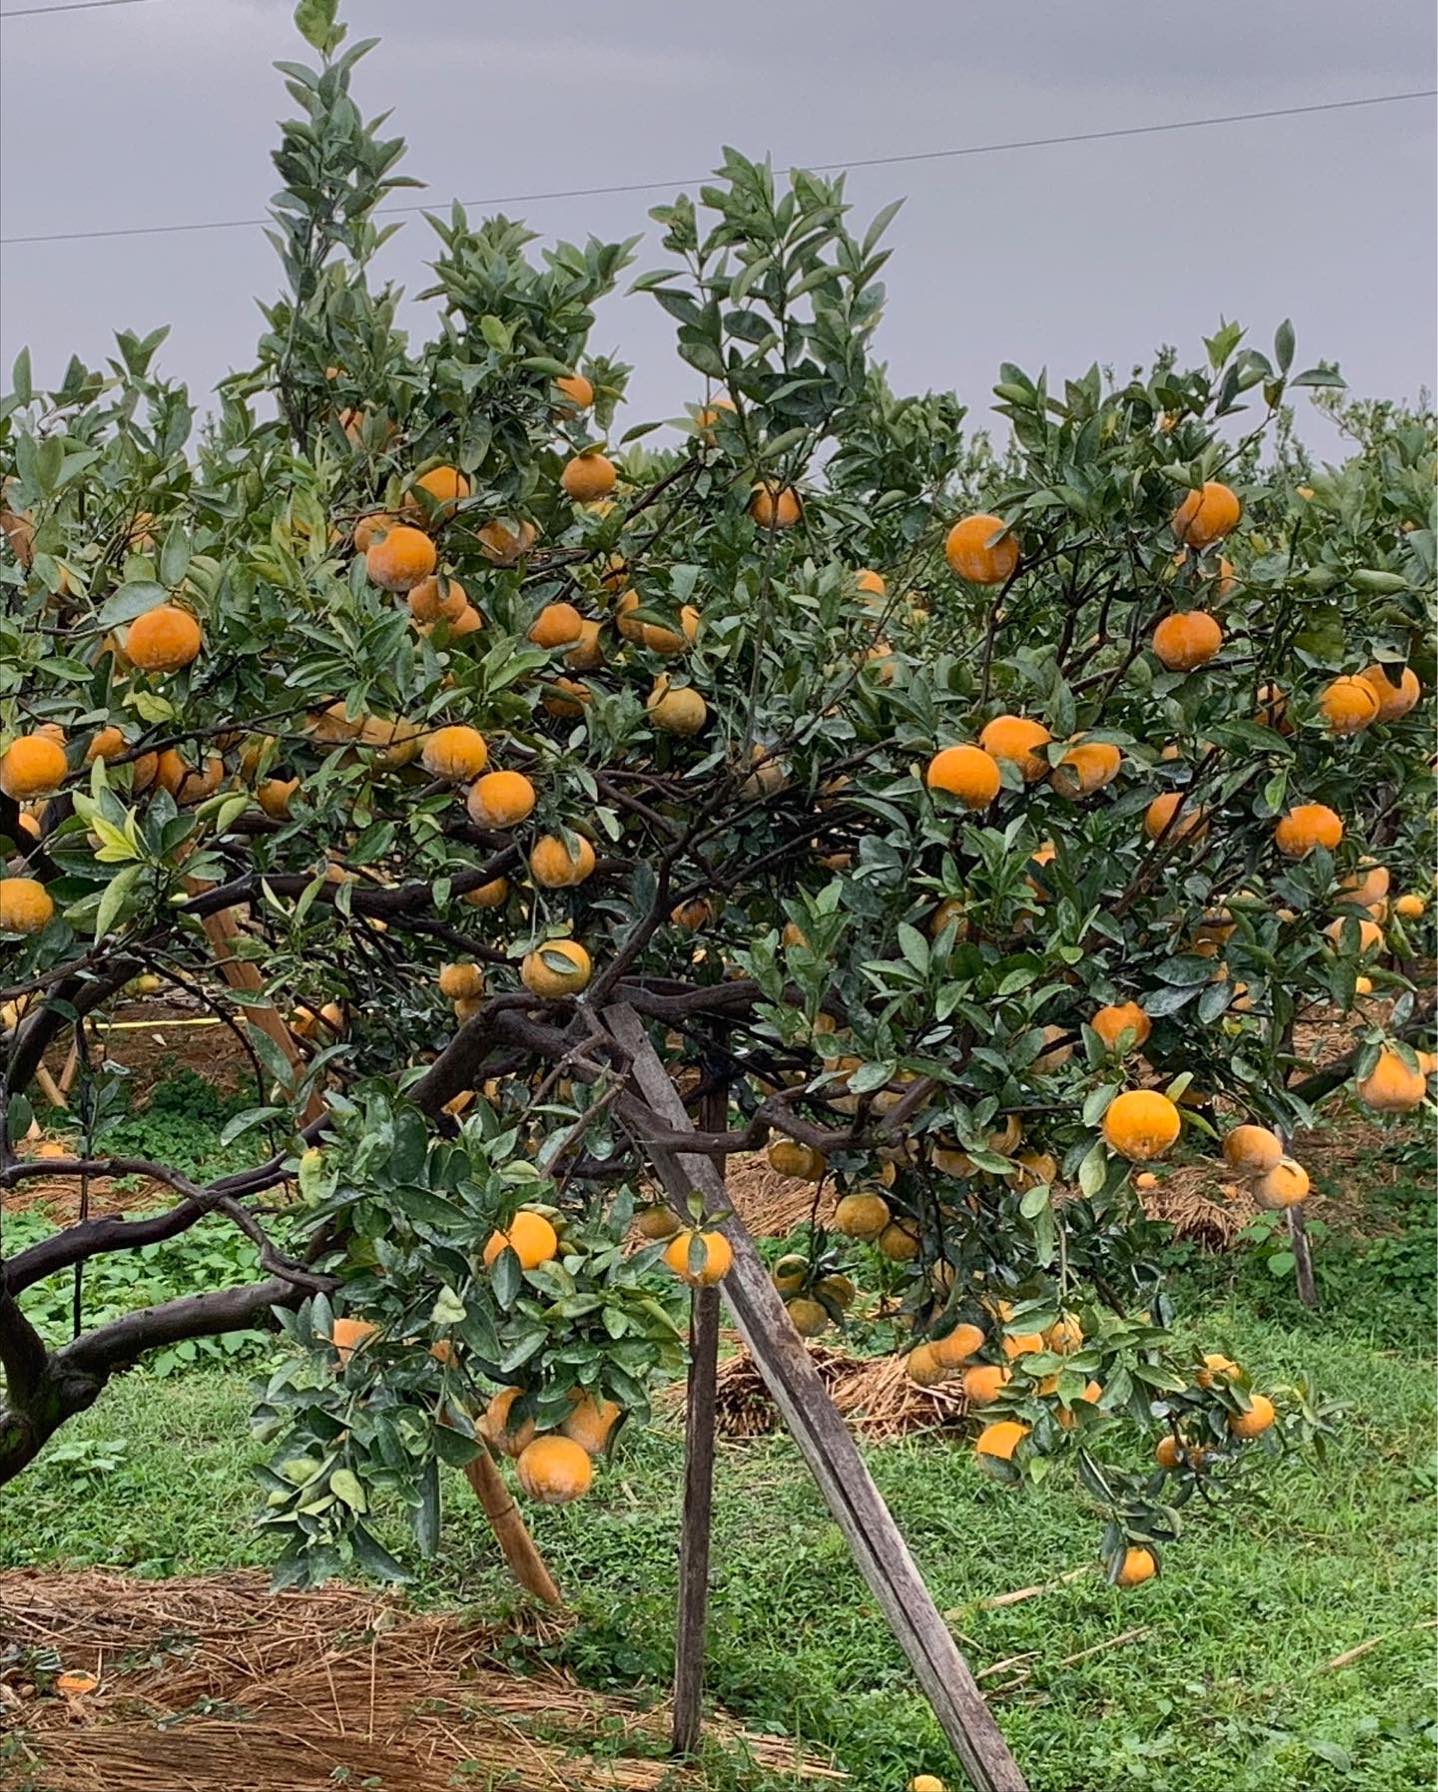  橙色農作休閒果園